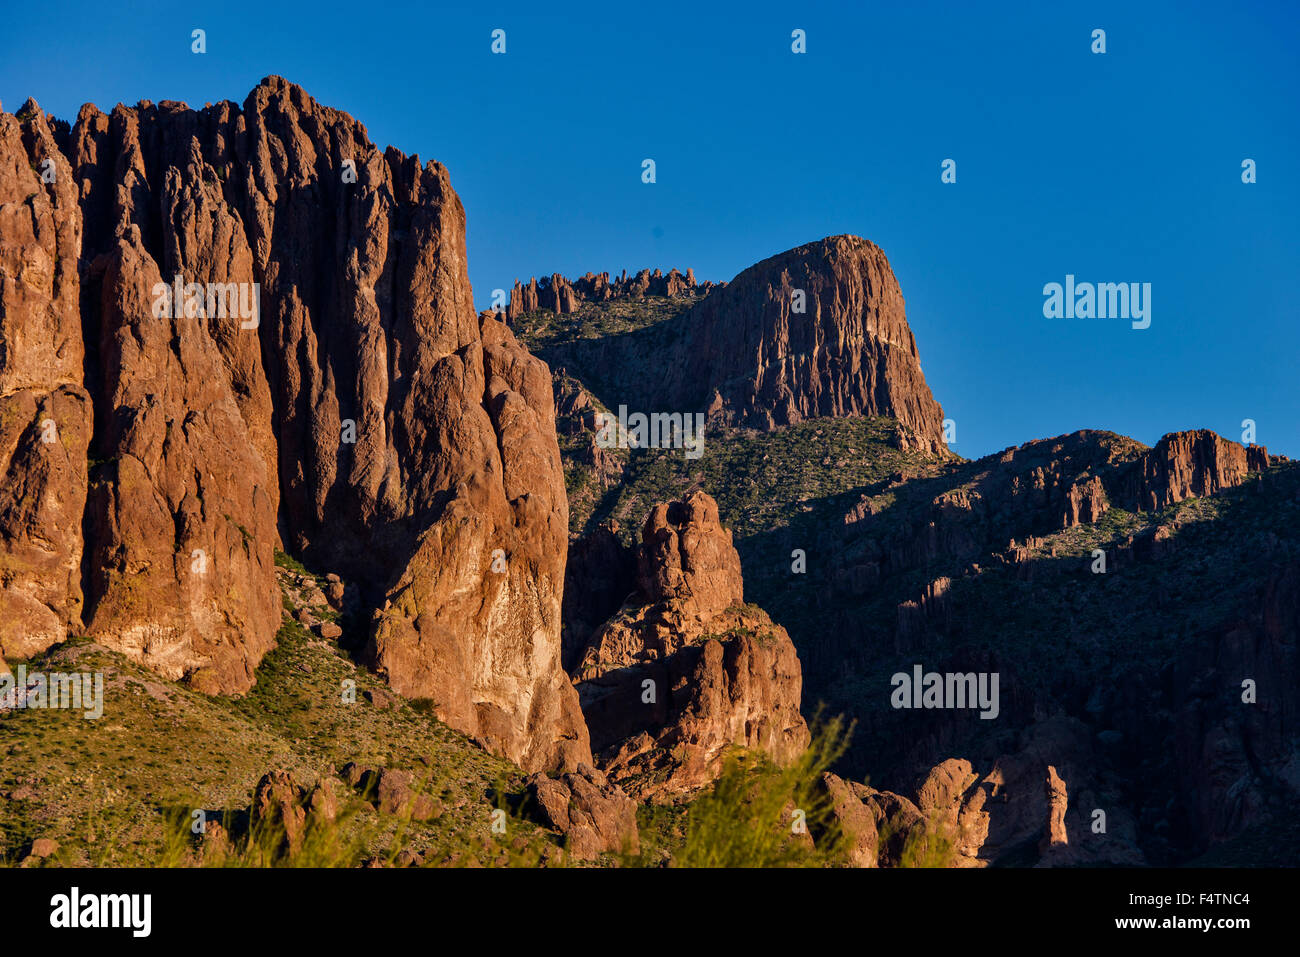 Camping paar mit erfinderischen Wassersack, Superstition Mountains,  Arizona, USA Stockfotografie - Alamy